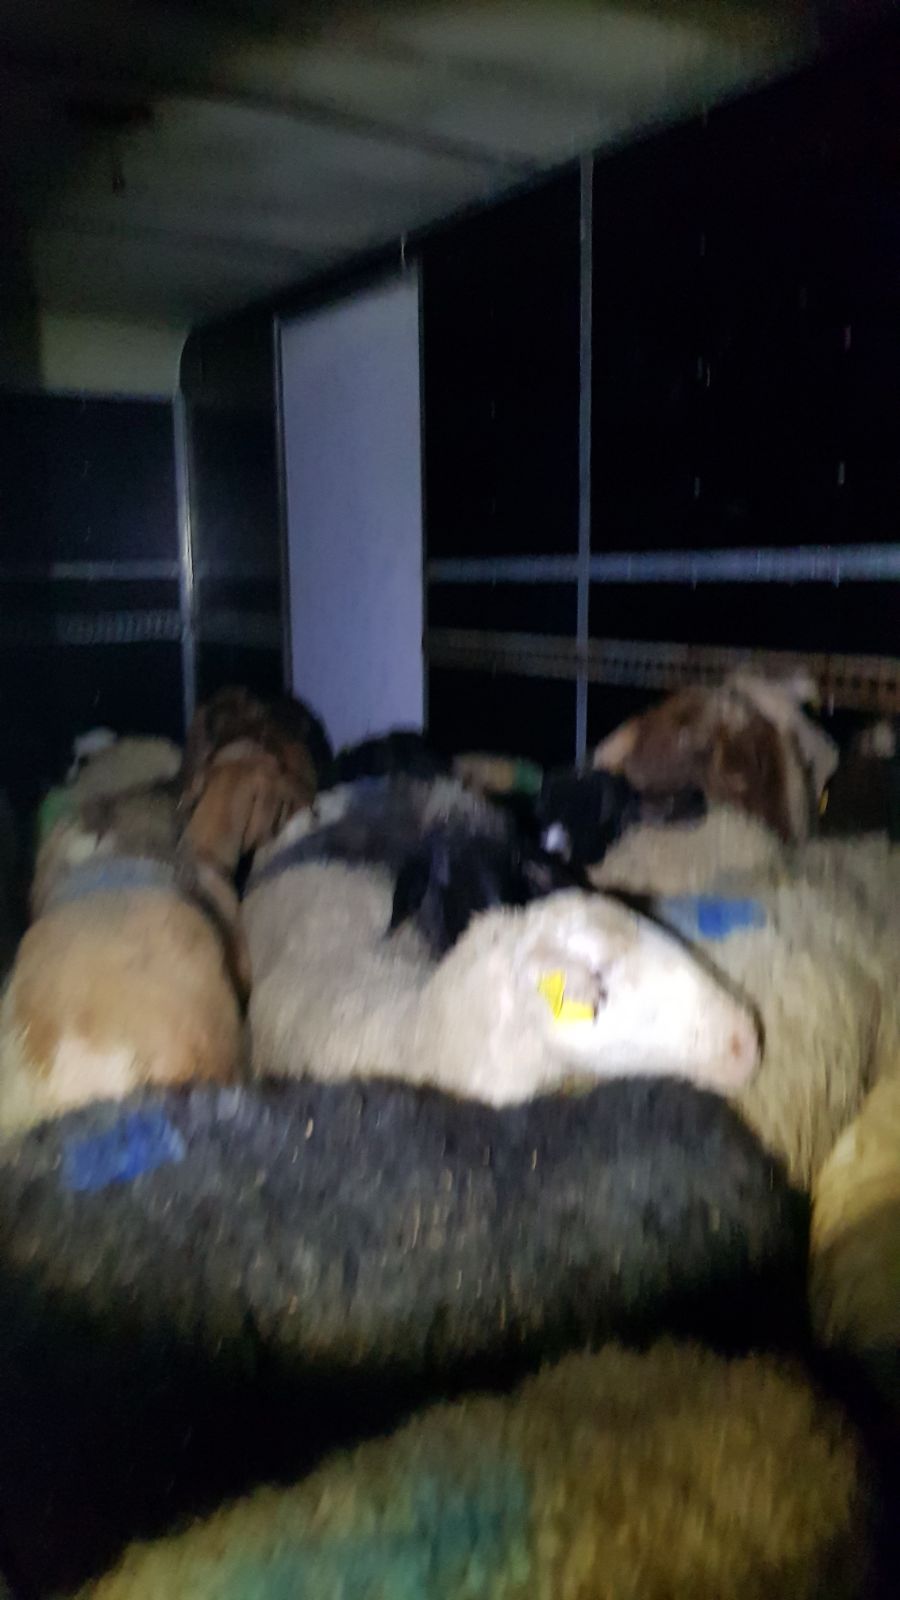 הבלשים לכדו 20 כבשים ופרה אחת • תיעוד